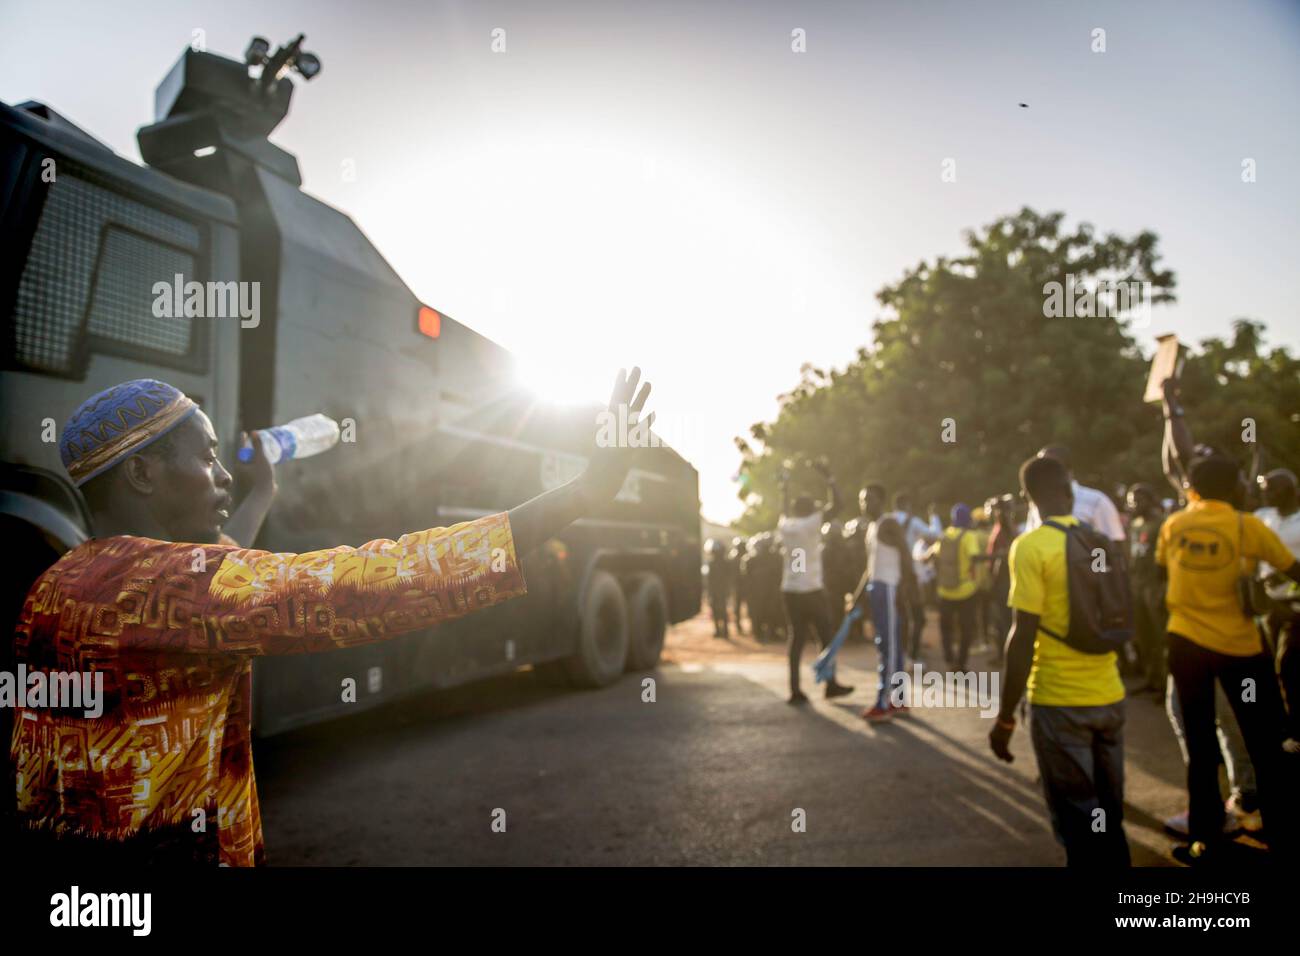 Un canon à eau est déployé pour disperser les manifestants pendant la manifestation.Les partisans de l'opposition du Parti démocratique Uni (UDP) protestent contre les résultats de l'élection présidentielle en Gambie, qui ont été rejetés par leur candidat Ousaïou Darboe.Le titulaire Adama Barrow a été retourné pour un second mandat avec une victoire retentissante. Banque D'Images